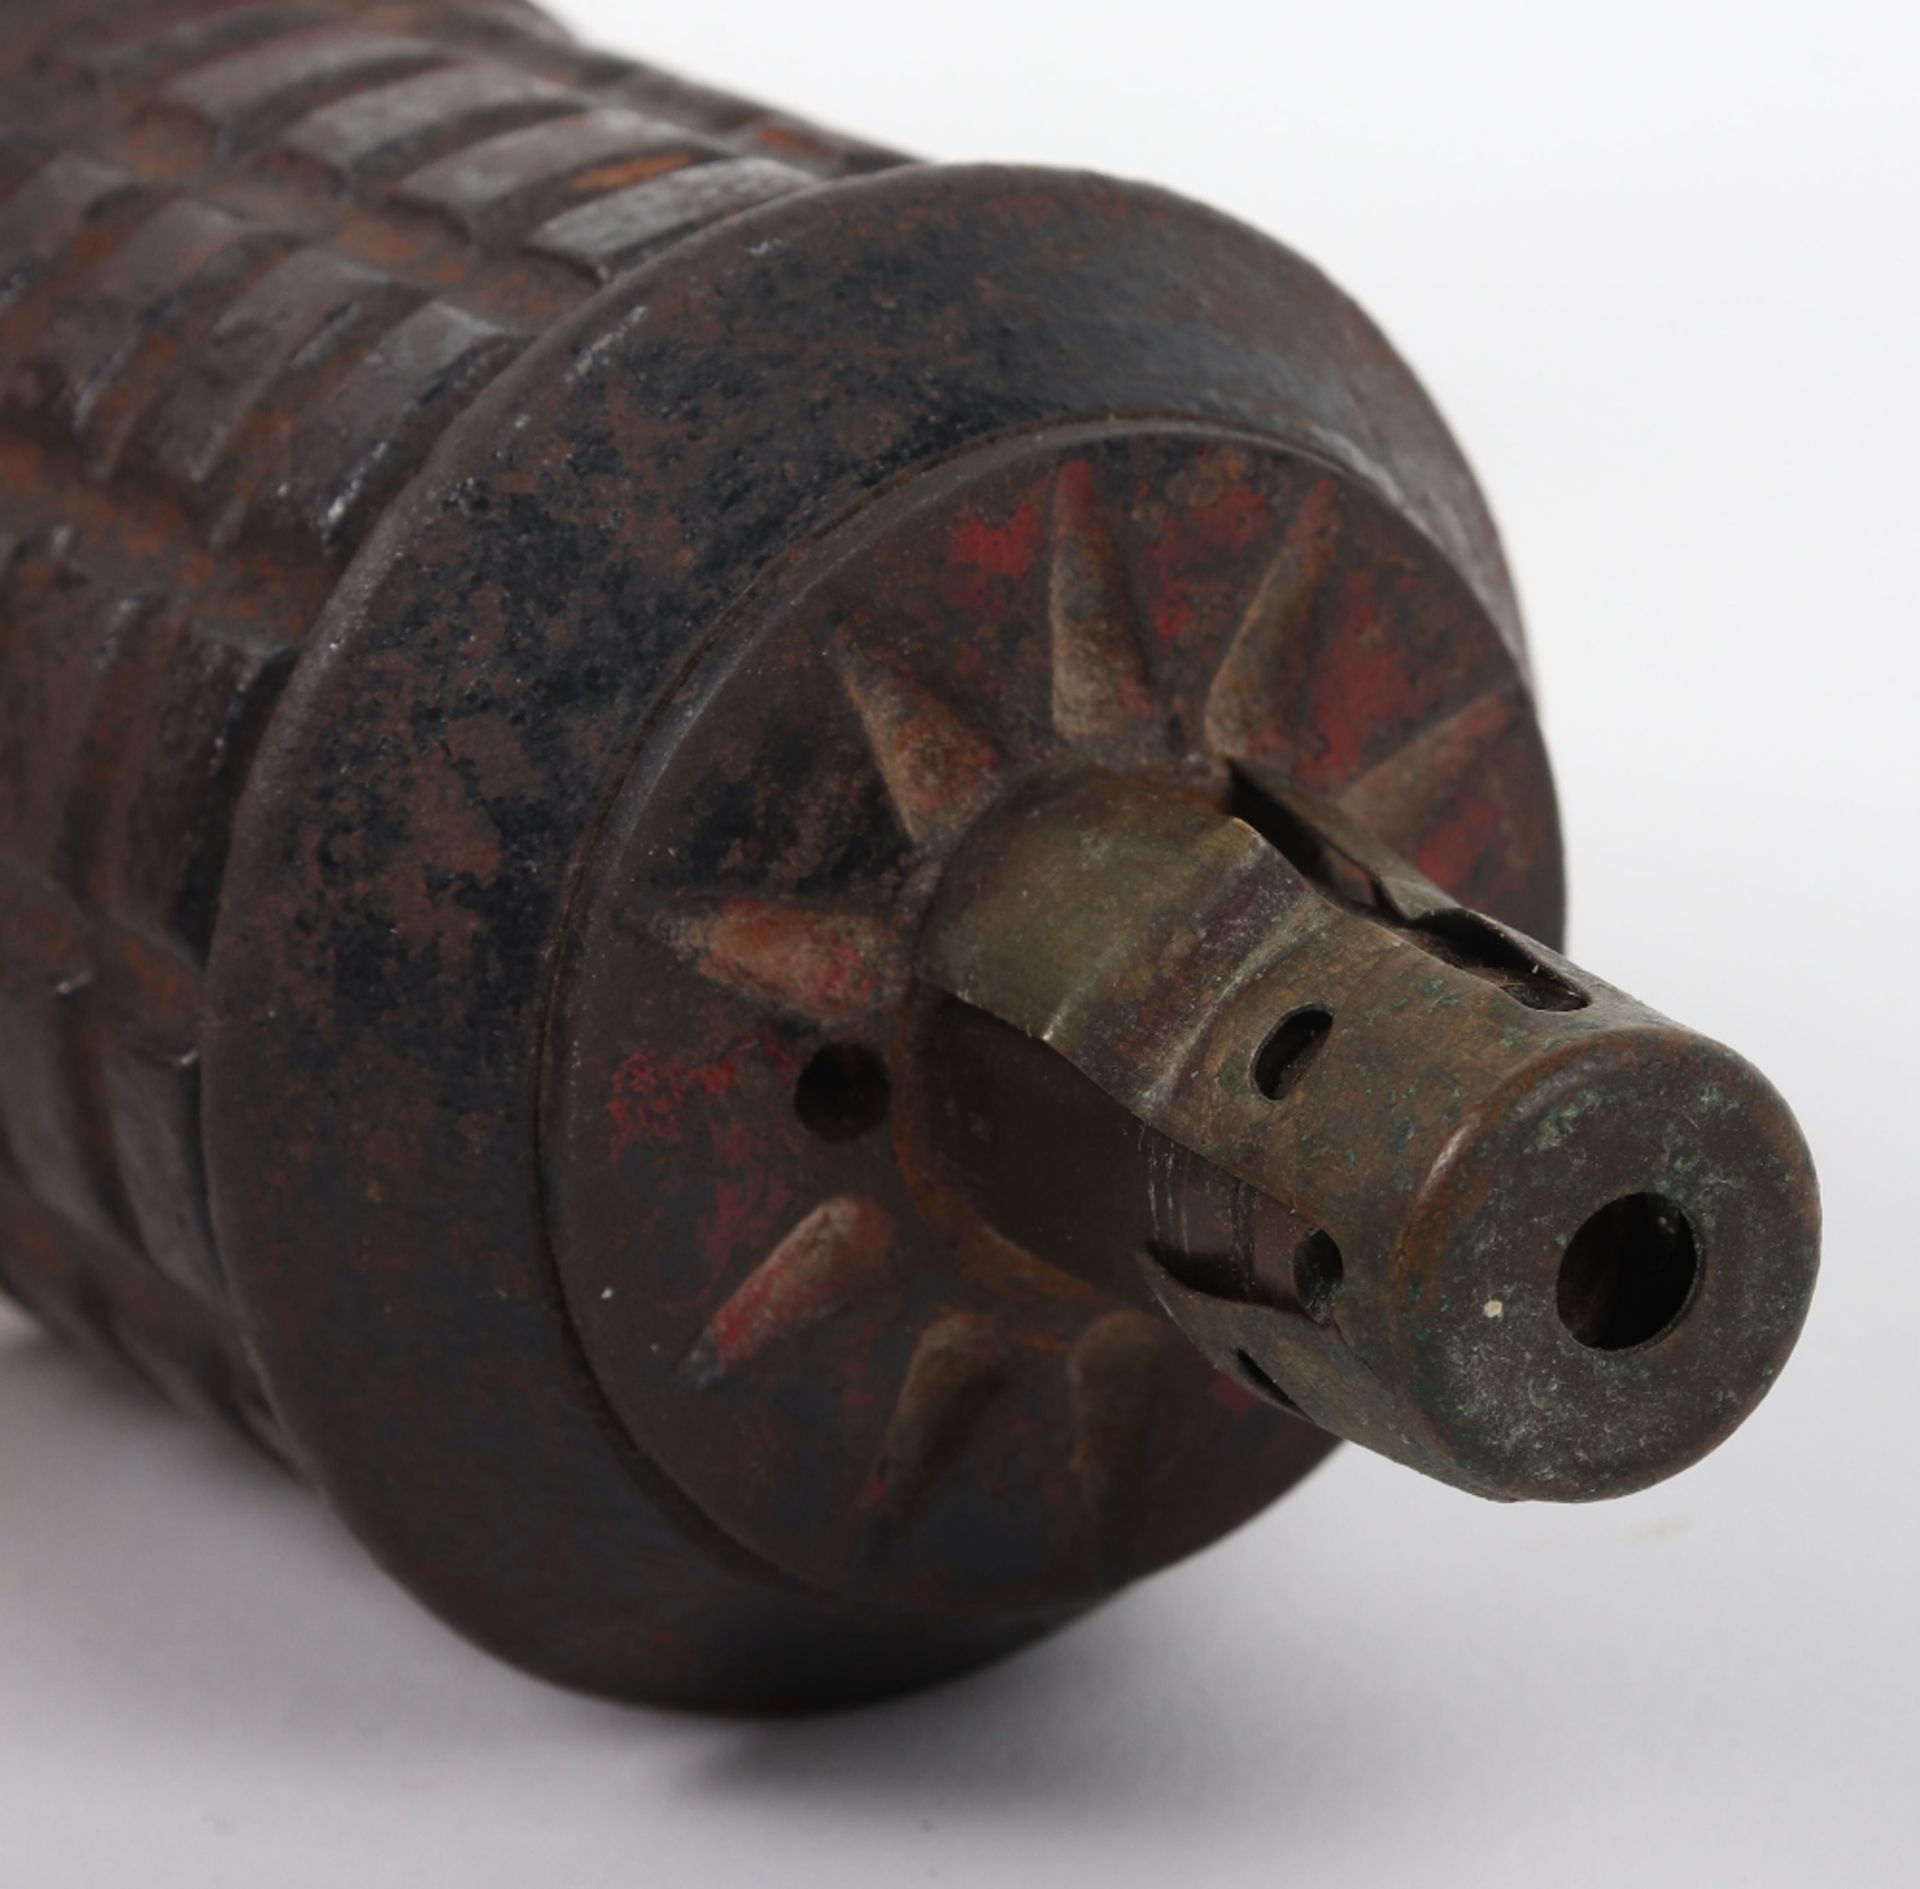 Inert WW2 Japanese Type 97 Hand Grenade - Image 5 of 5